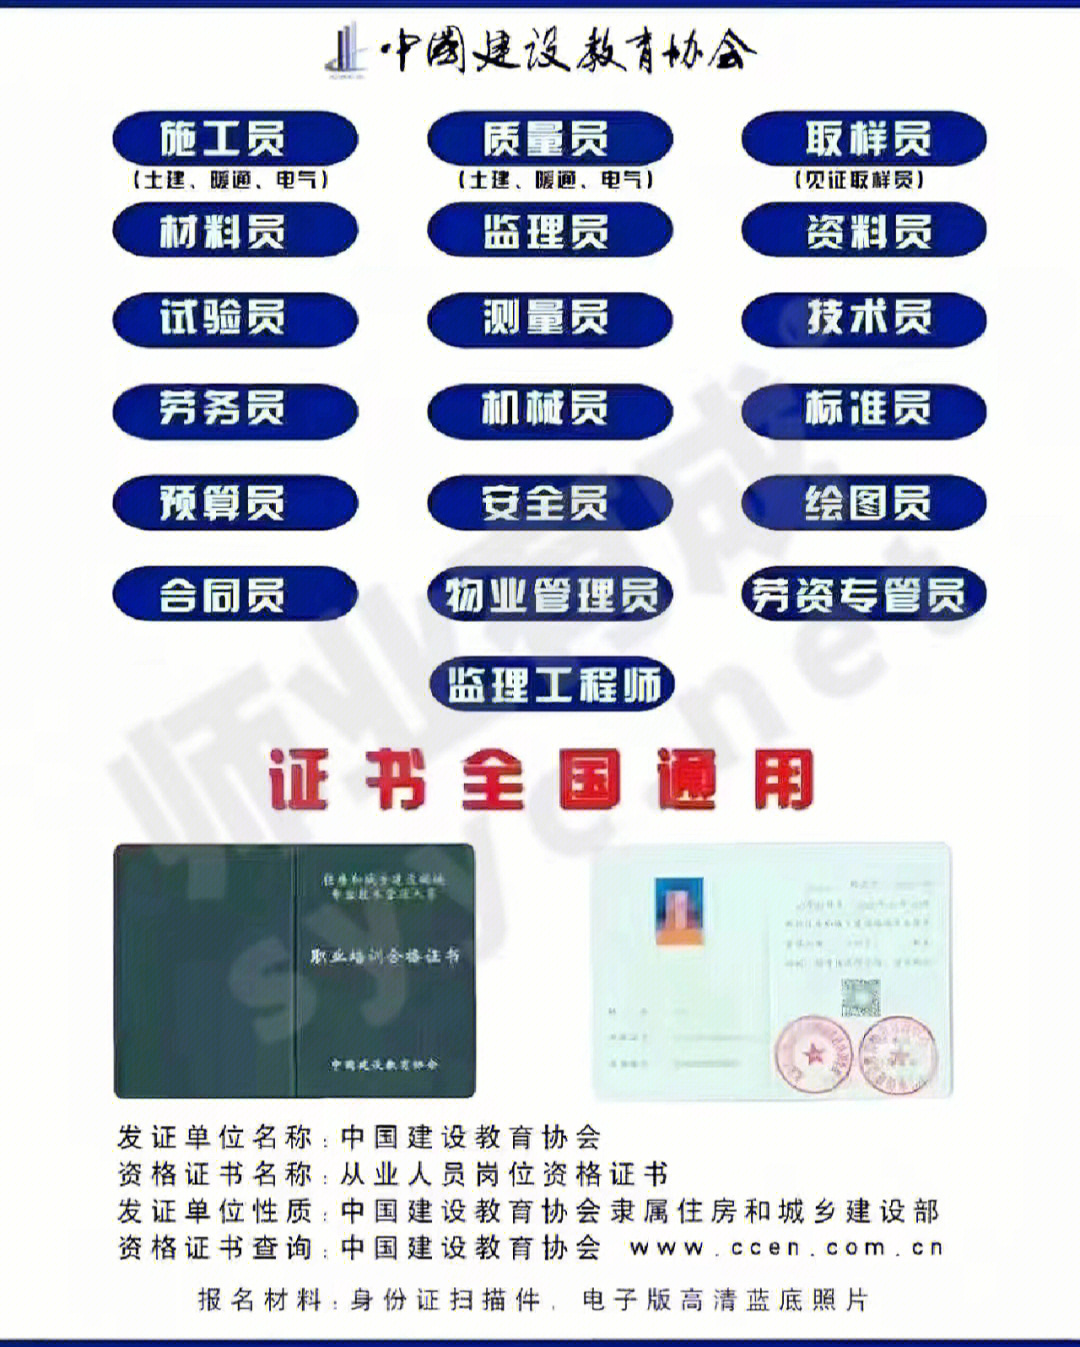 78中国建设教育协会八大员证书